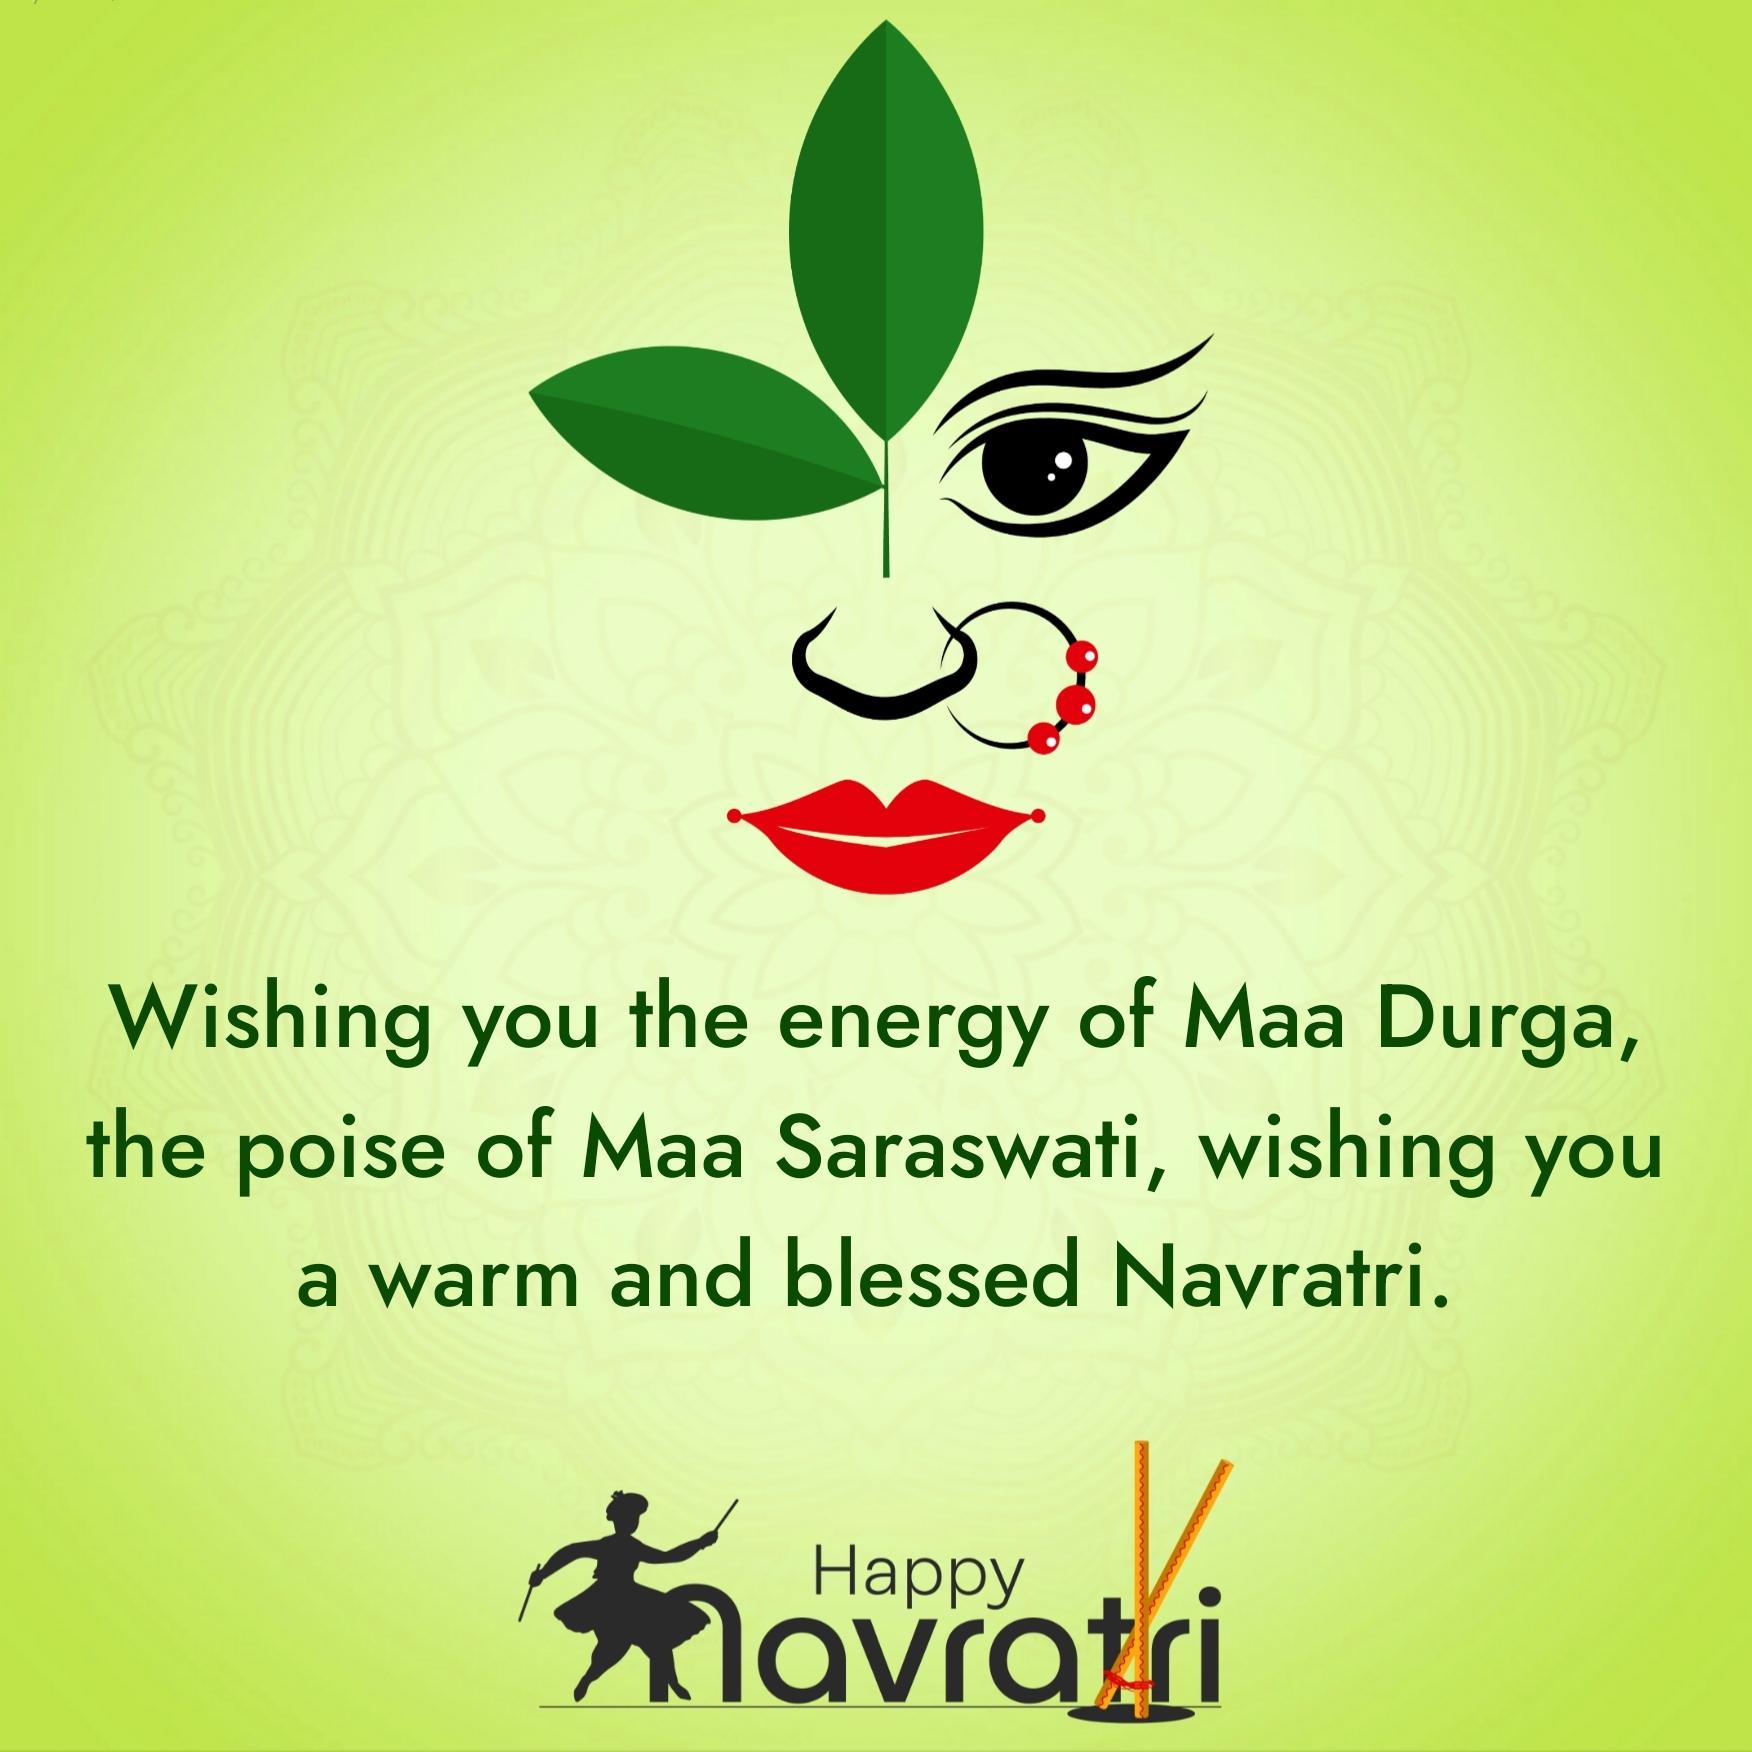 Wishing you the energy of Maa Durga